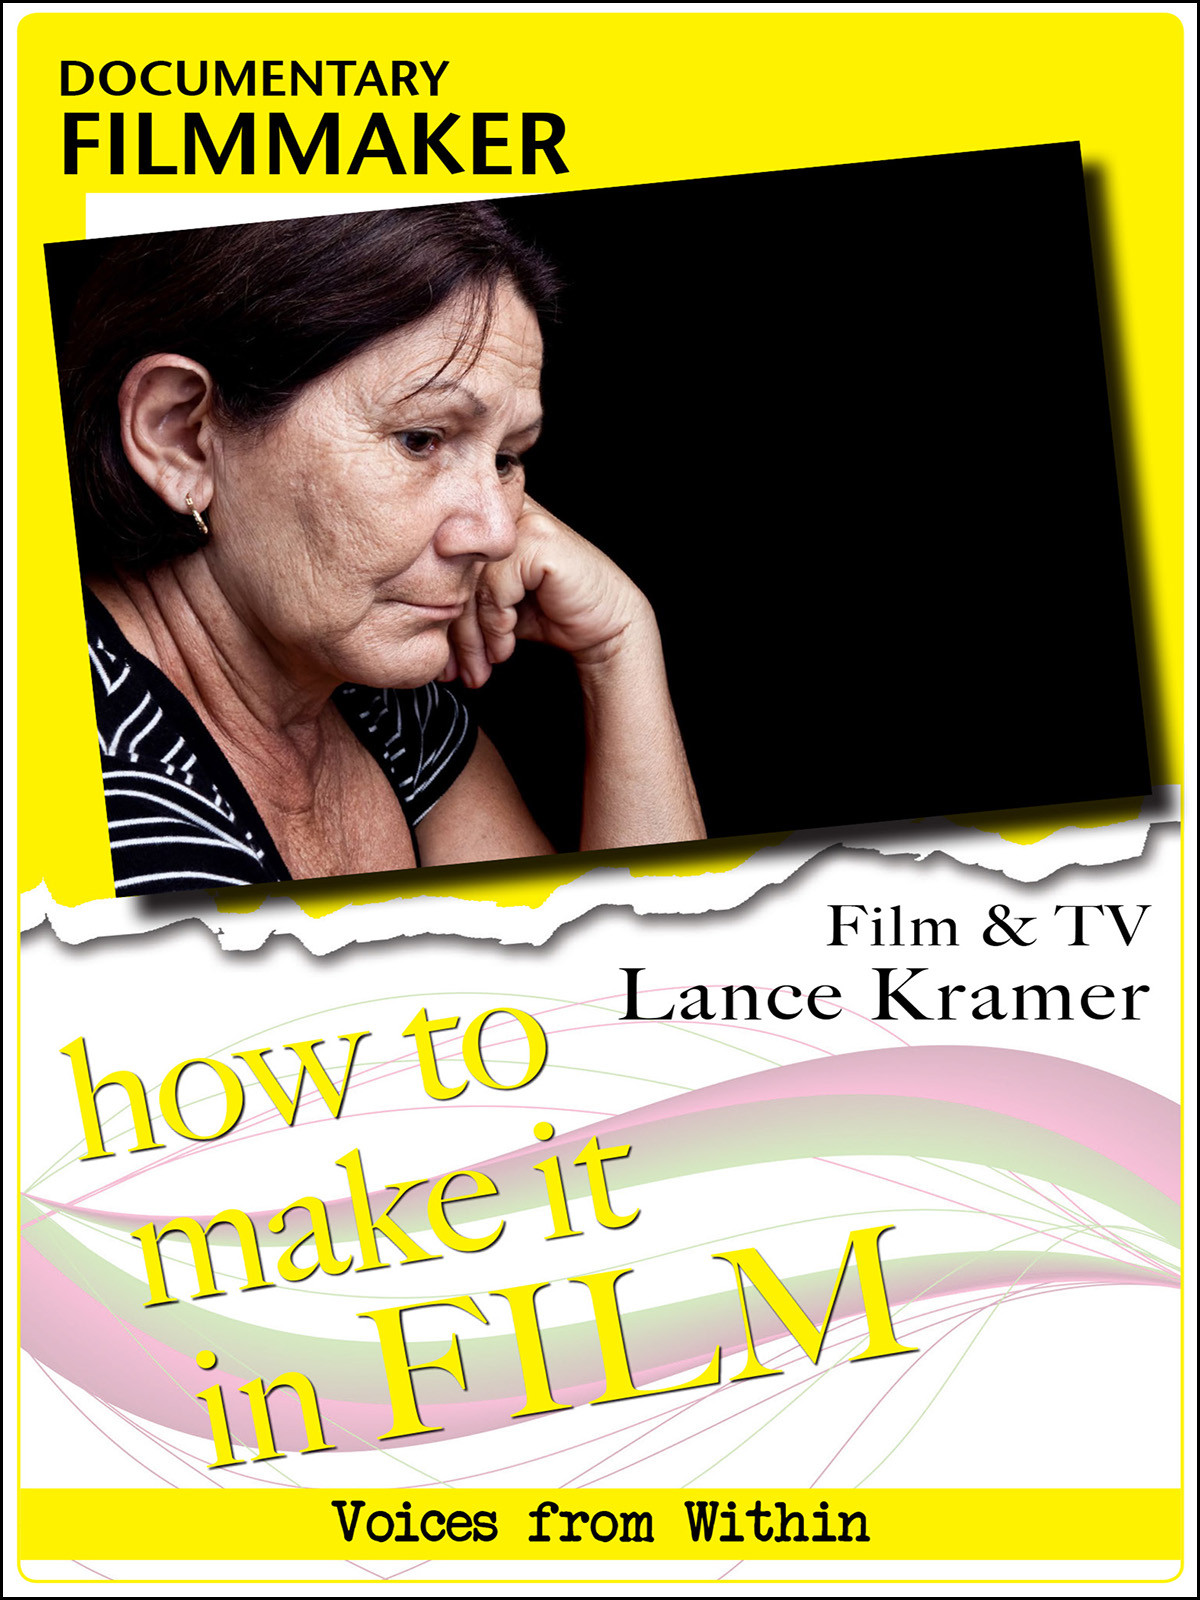 F2867 - Documentary Filmmaker Film & TV Lance Kramer